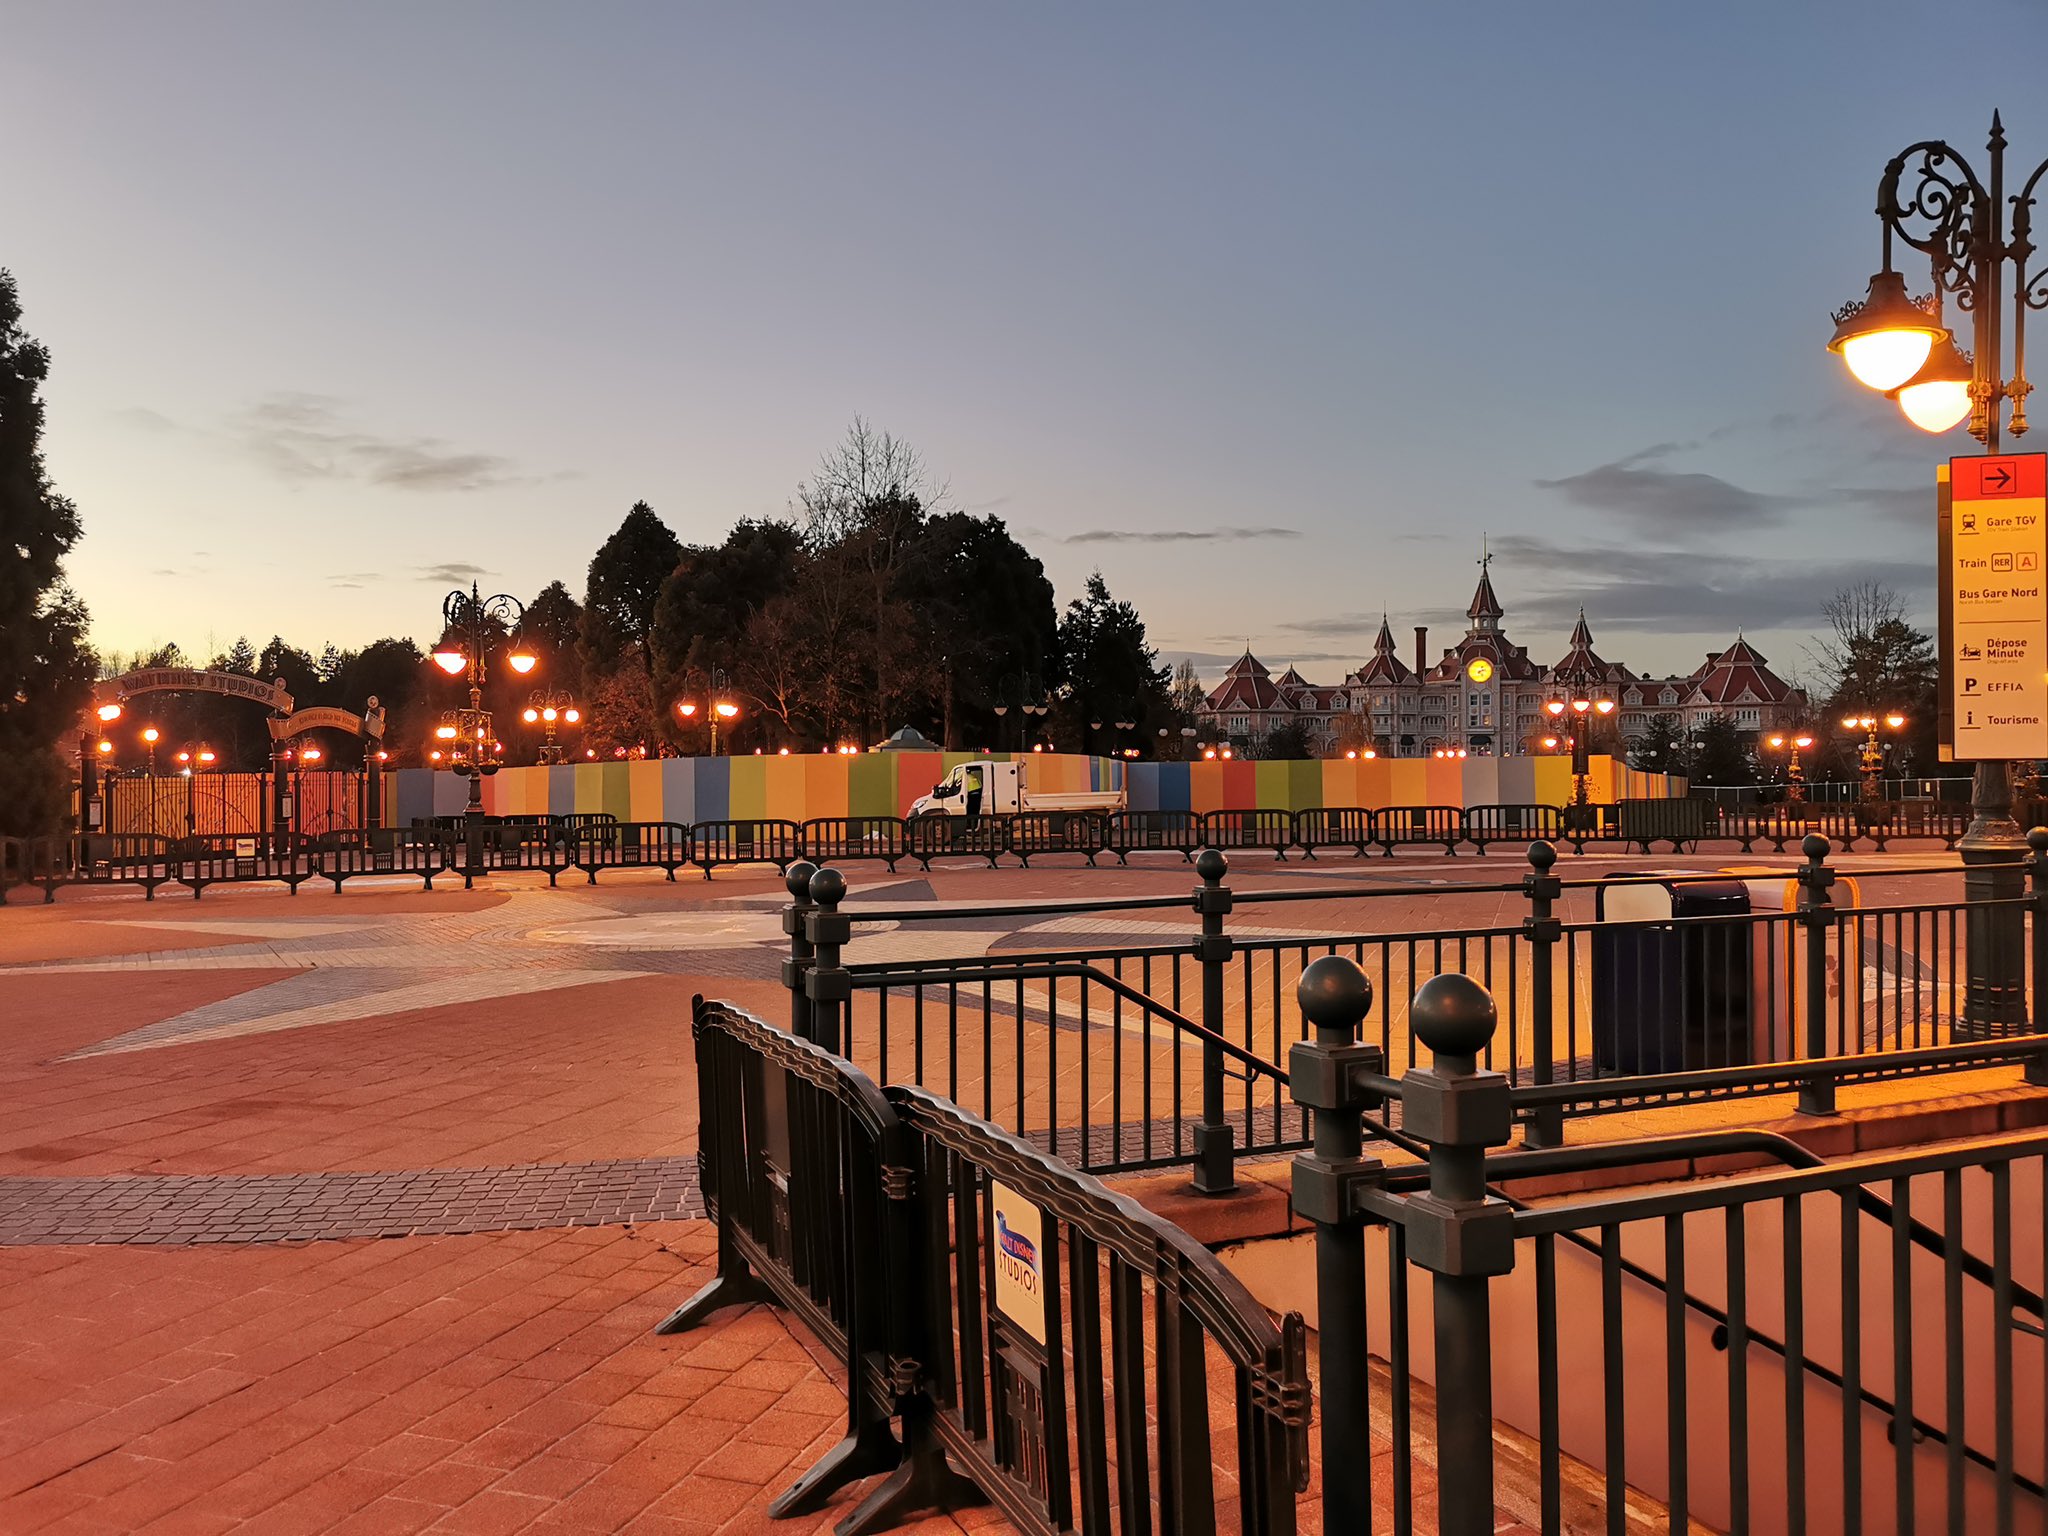 Esplanade : Nouvel Aménagement entre les Parcs, la Gare et Disney Village - Page 24 EpSpCouXcAojm1O?format=jpg&name=large